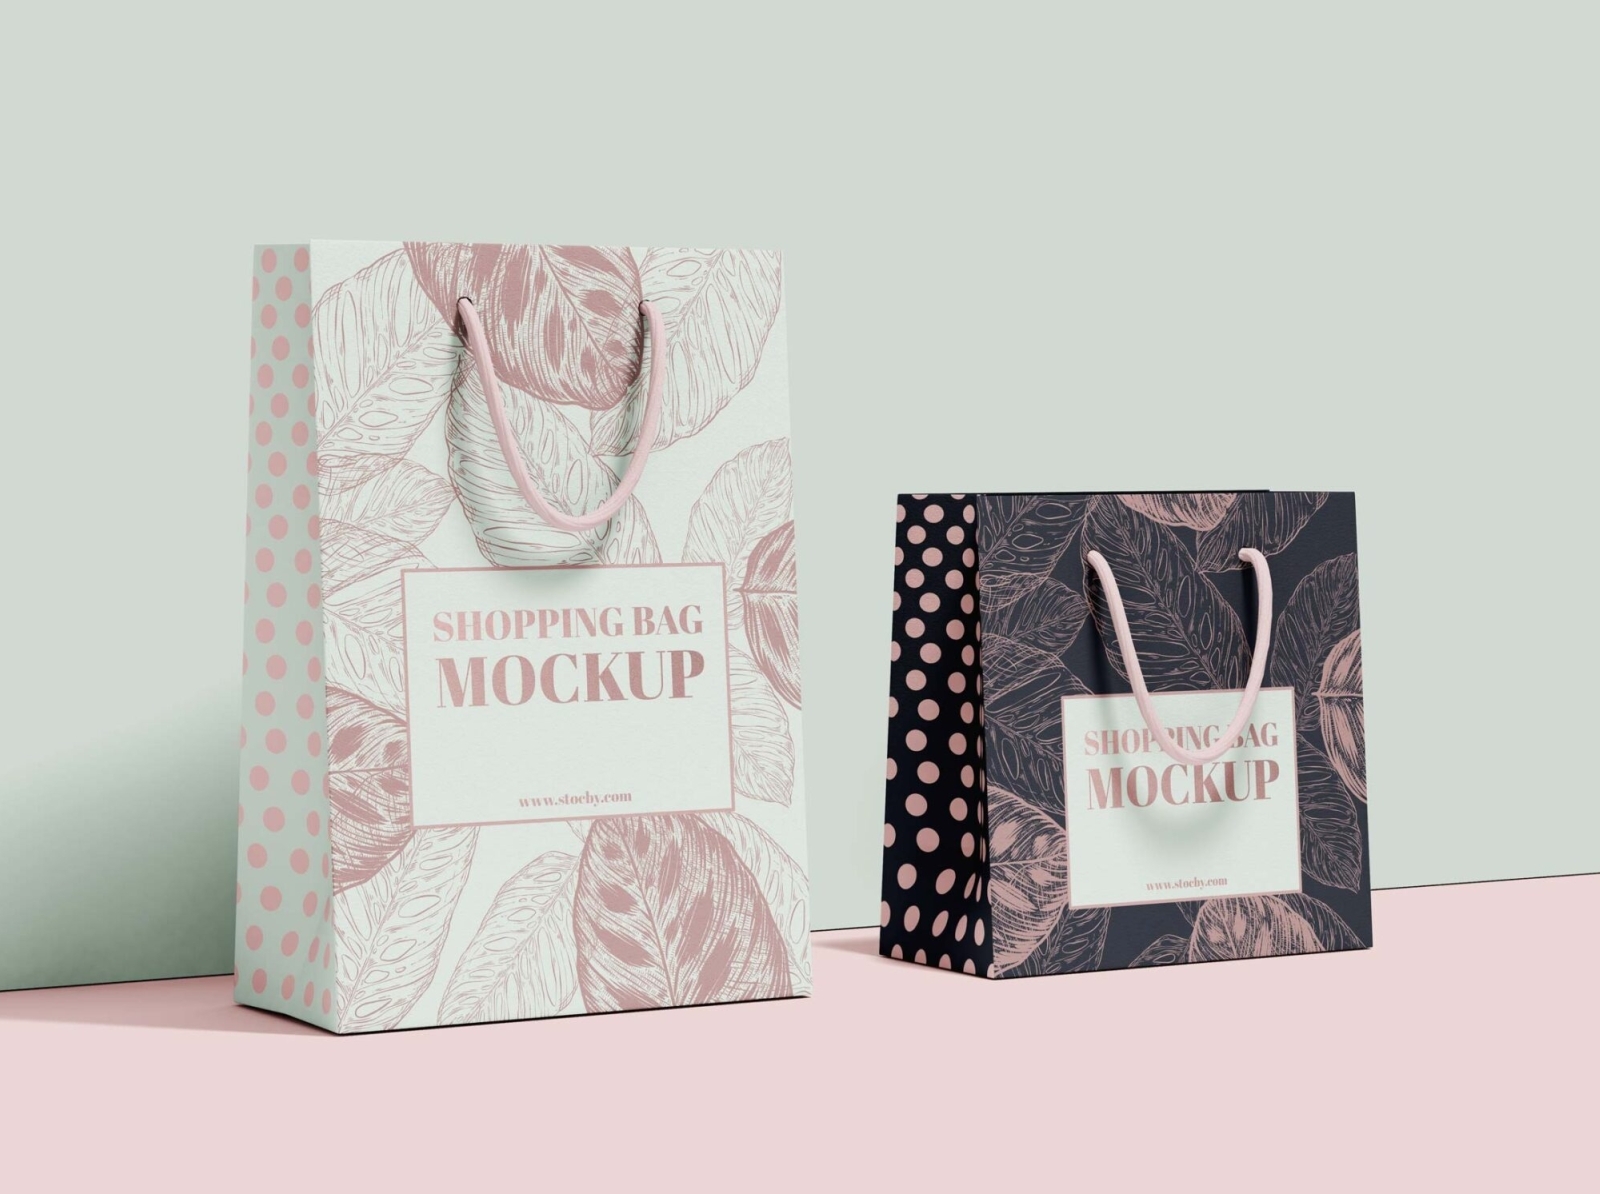 Shopping Bag Mockup Download / Mockup Set by MOCKUP LINE on Dribbble